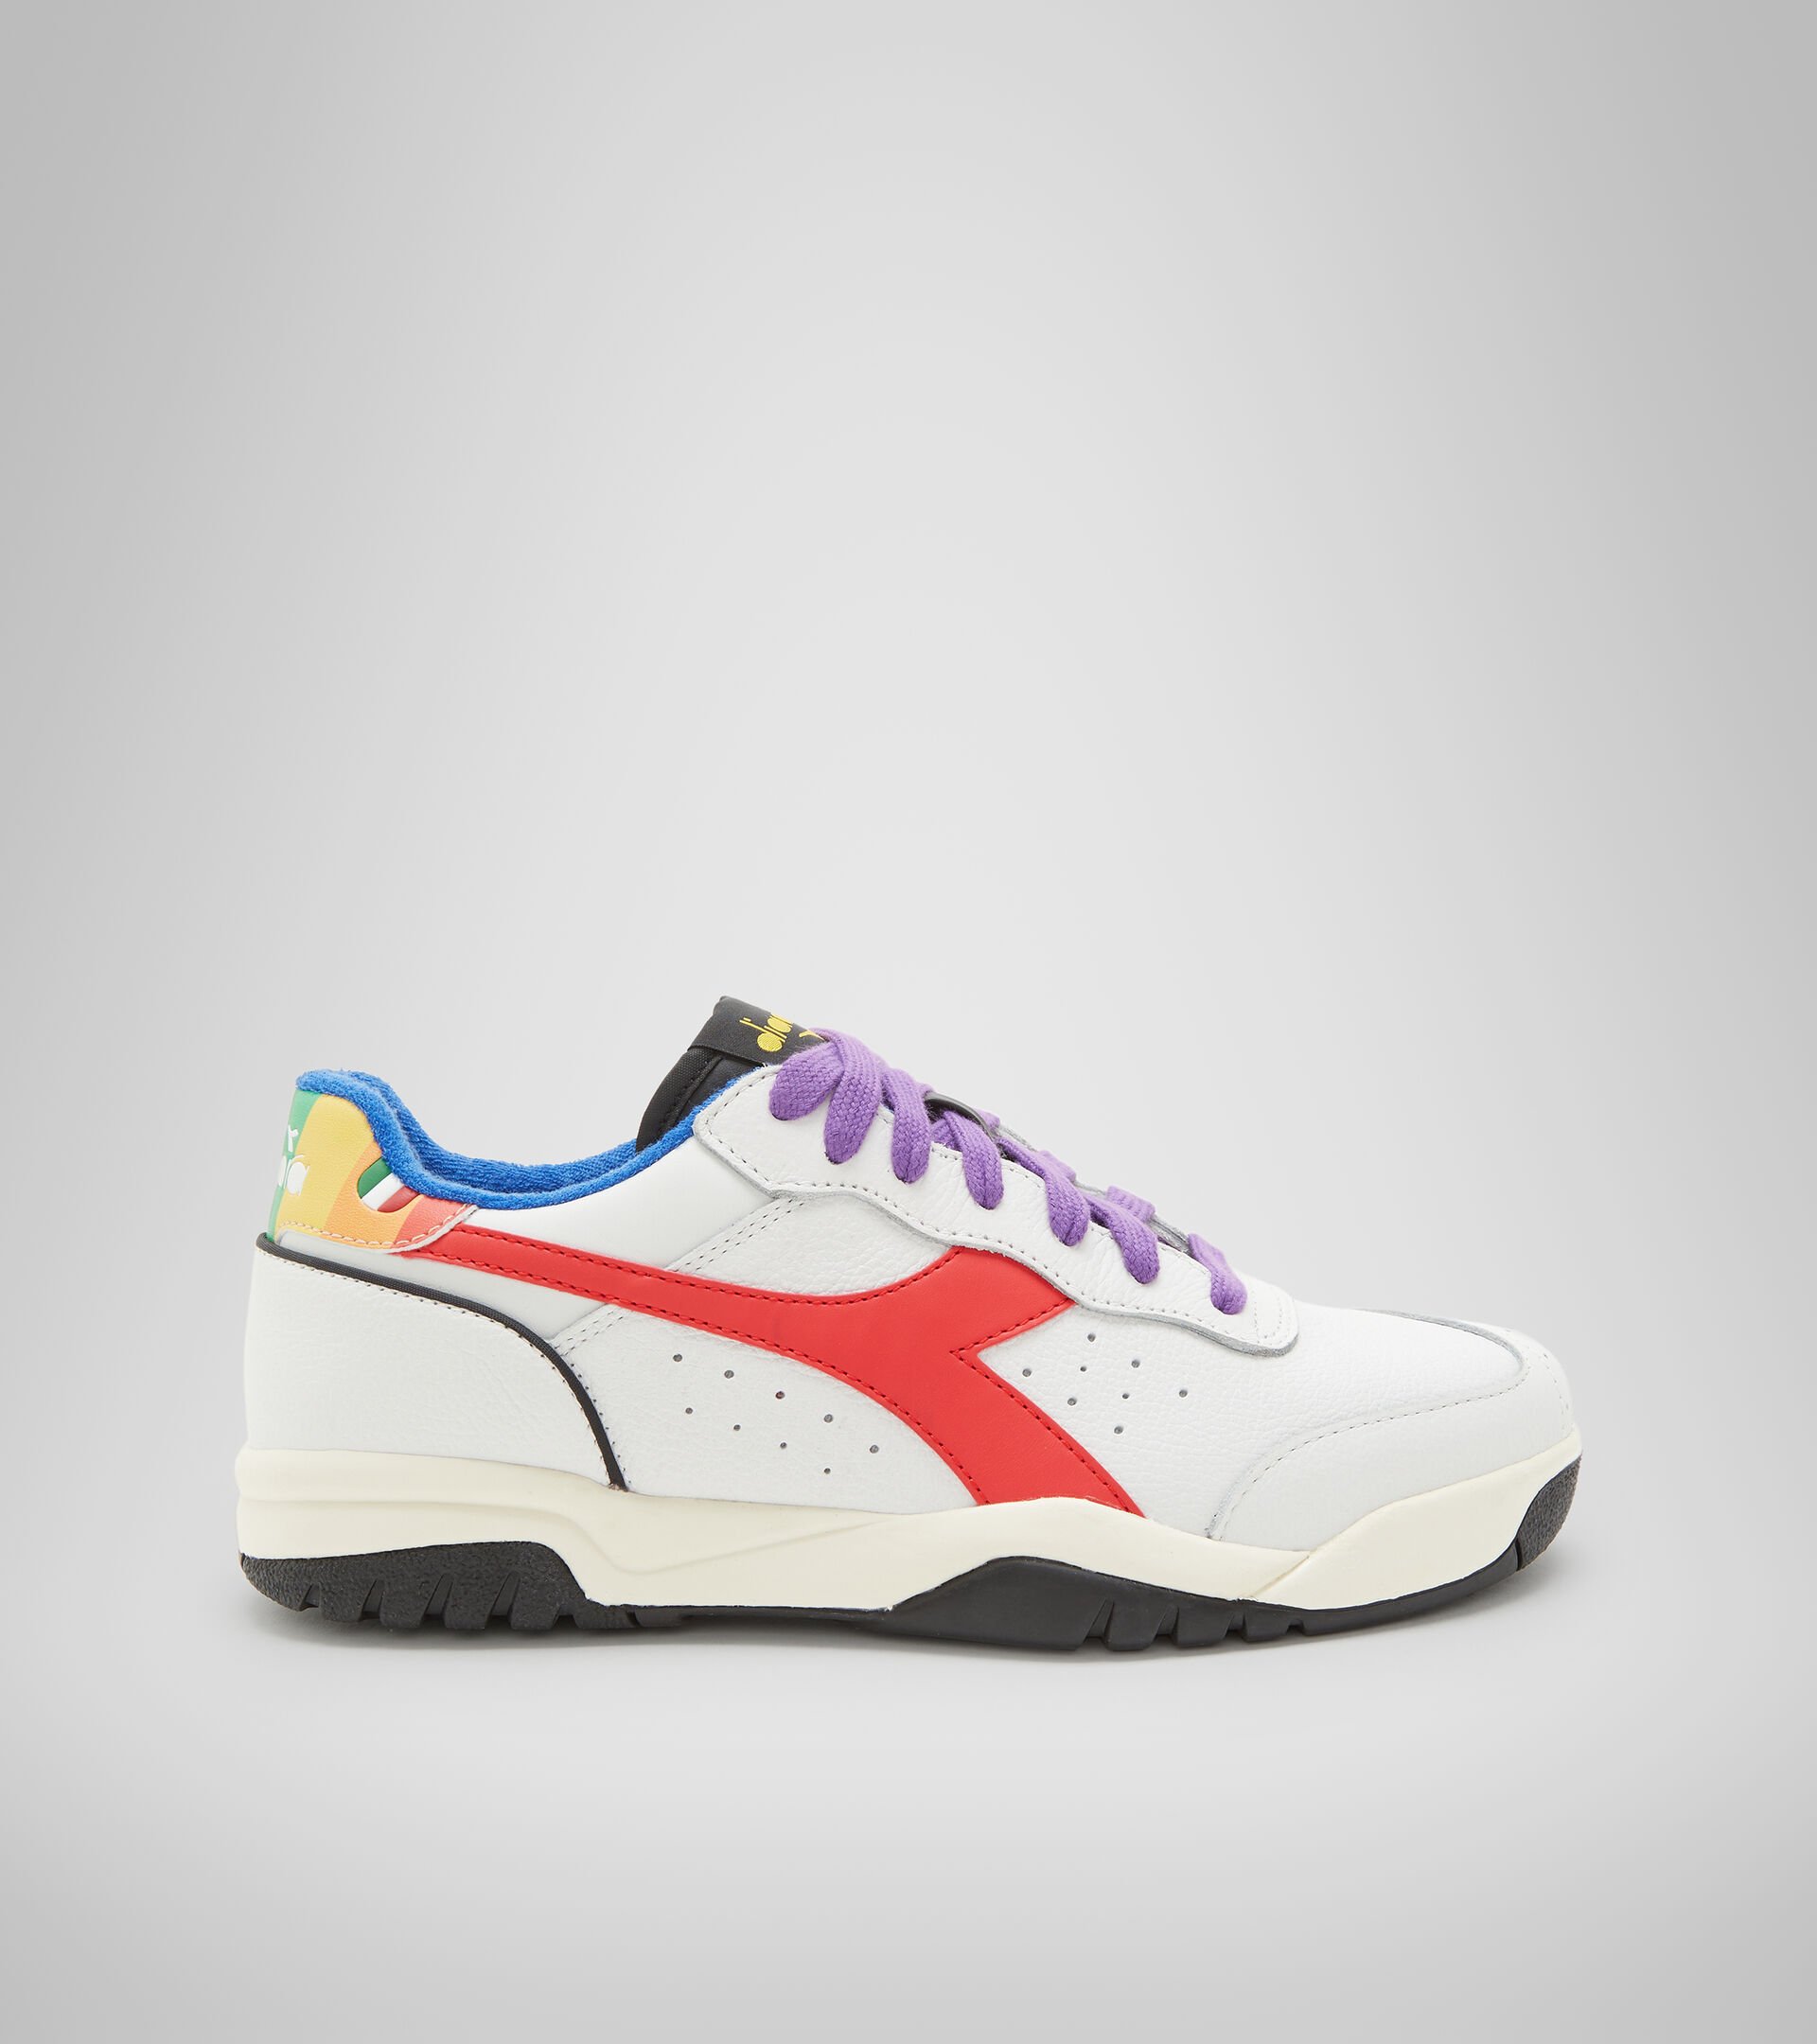 motief Misverstand iets MAVERICK PRISM Sports shoes - Men - Diadora Online Store US